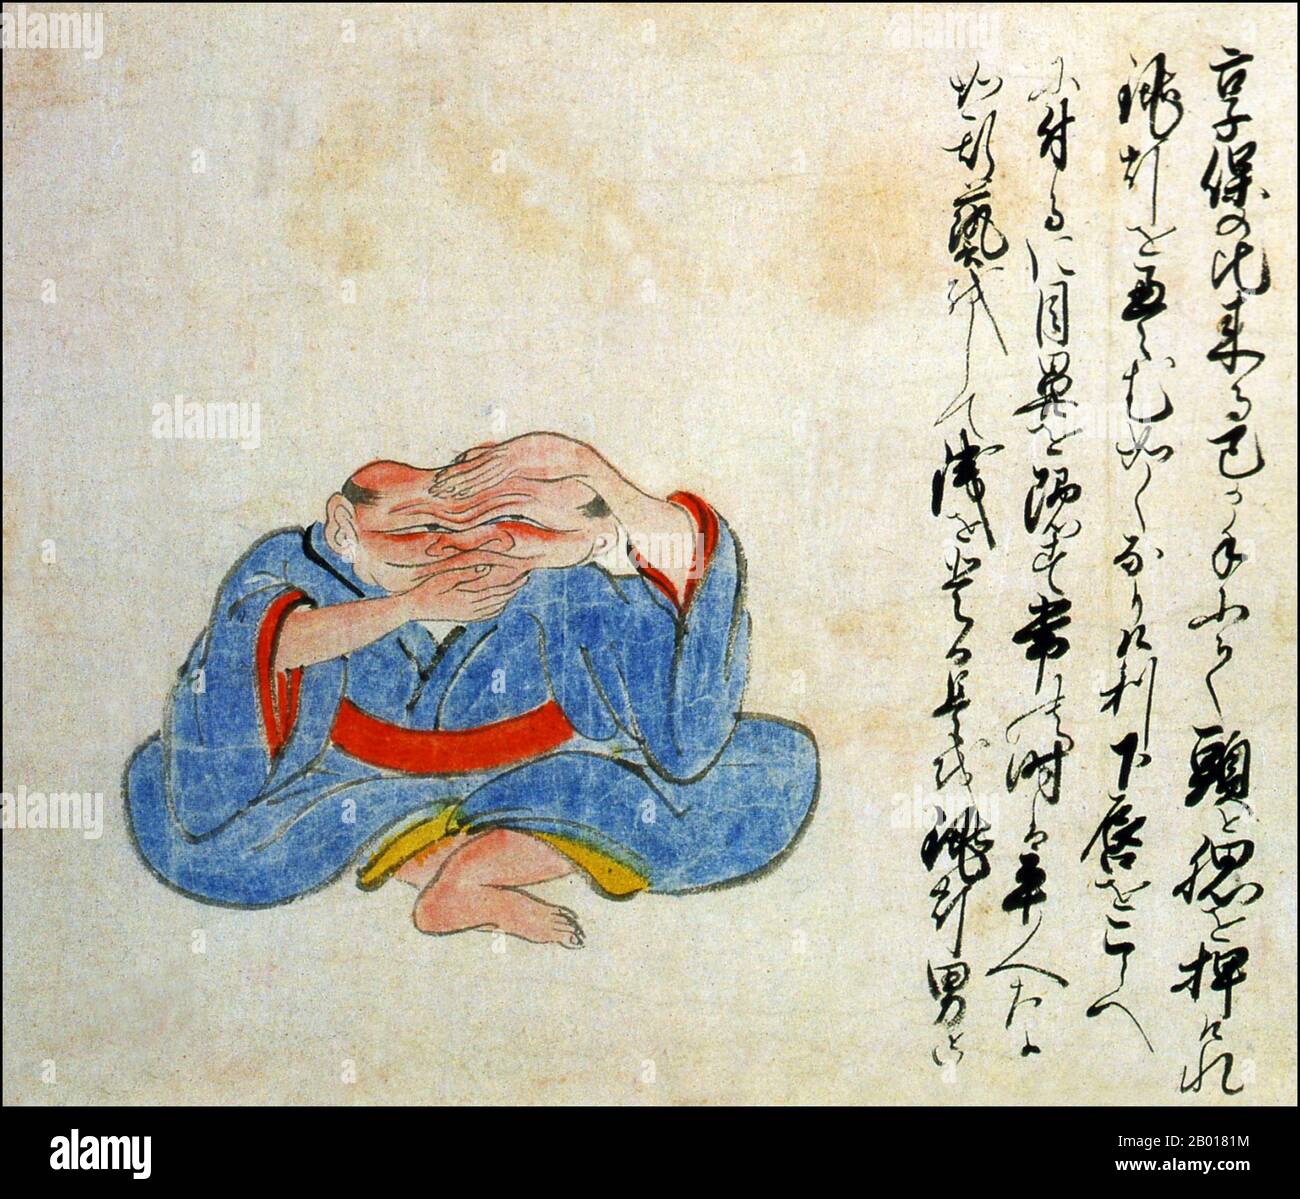 Japan: Ein 'Laternenmann' mit einem zusammenklappbaren Kopf. Aus der Kaikidan Ekotoba Monsterrolle, Mitte 19th. Jahrhundert. In den frühen Jahrzehnten des 18th. Jahrhunderts machte ein Mann mit einem formbaren Kopf seinen Lebensunterhalt als beliebte Nebenschauplatz-Attraktion. Es wird gesagt, dass er seinen Kopf wie eine traditionelle Papierlaterne einstürzen könnte. Der Kaikidan Ekotoba ist eine Handscroll aus der Mitte des 19th. Jahrhunderts, die 33 legendäre Monster und menschliche Merkwürdigkeiten zeigt, die hauptsächlich aus der Kyushu-Region Japans stammen, aber mit mehreren aus anderen Ländern, darunter China, Russland und Korea. Stockfoto